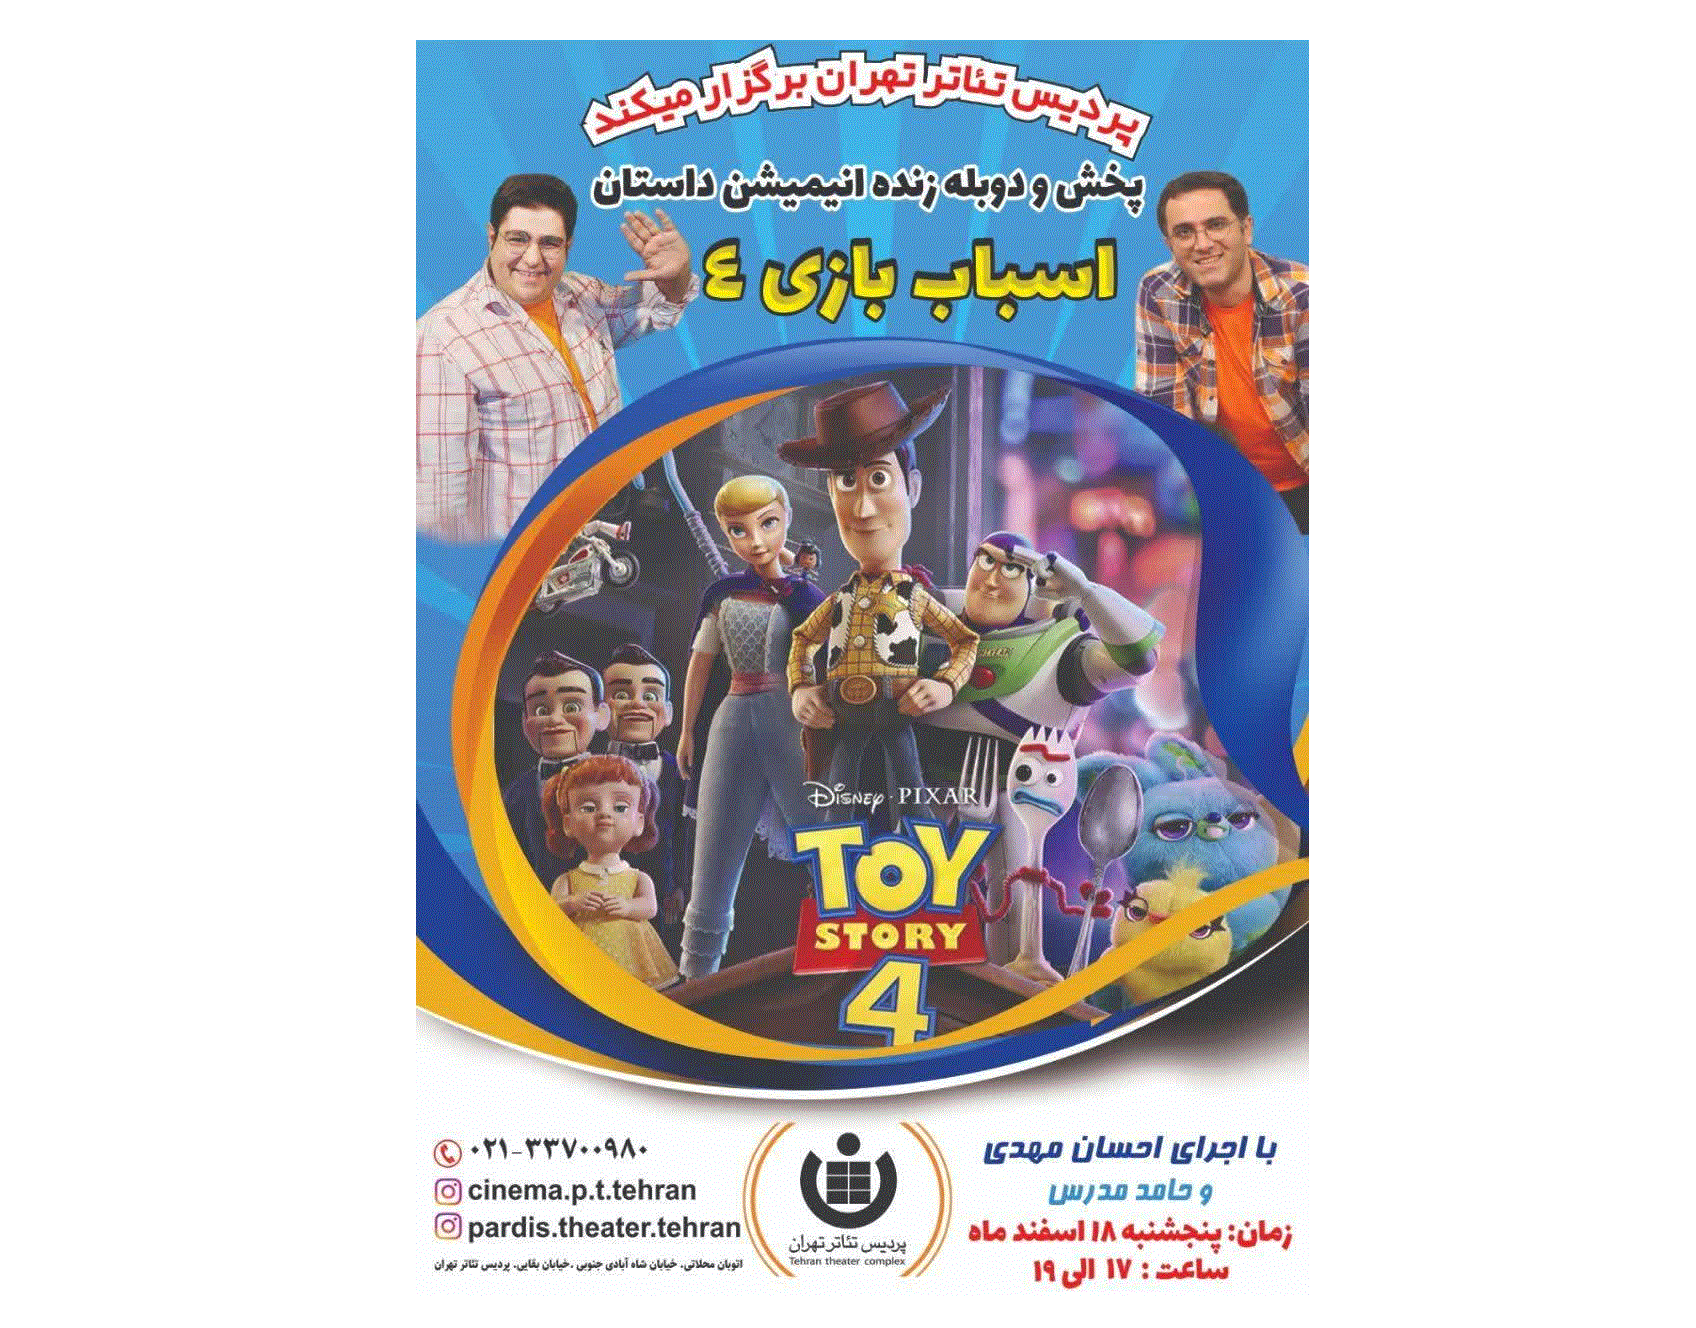 پخش و دوبله همزمان انیمیشن داستان اسباب بازی 4 در پردیس تئاتر تهران